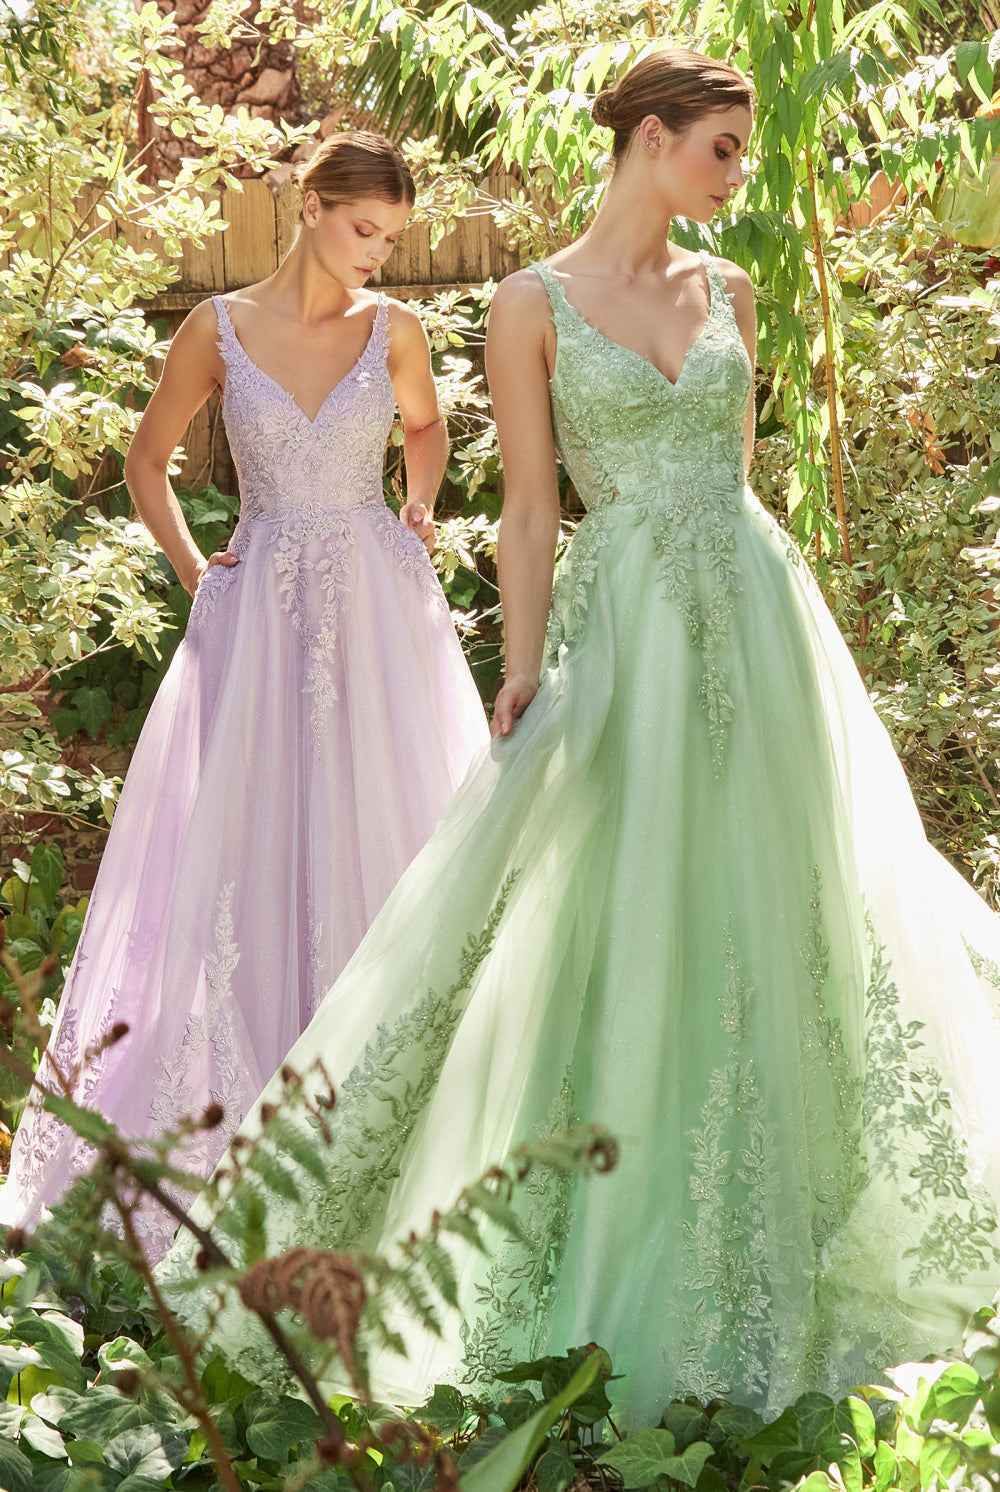 Vintage Prom Dress w/Lace, Floral, Open Back & Deep v-neck Bodice; Pastel Blue Lavender Sage-smcdress